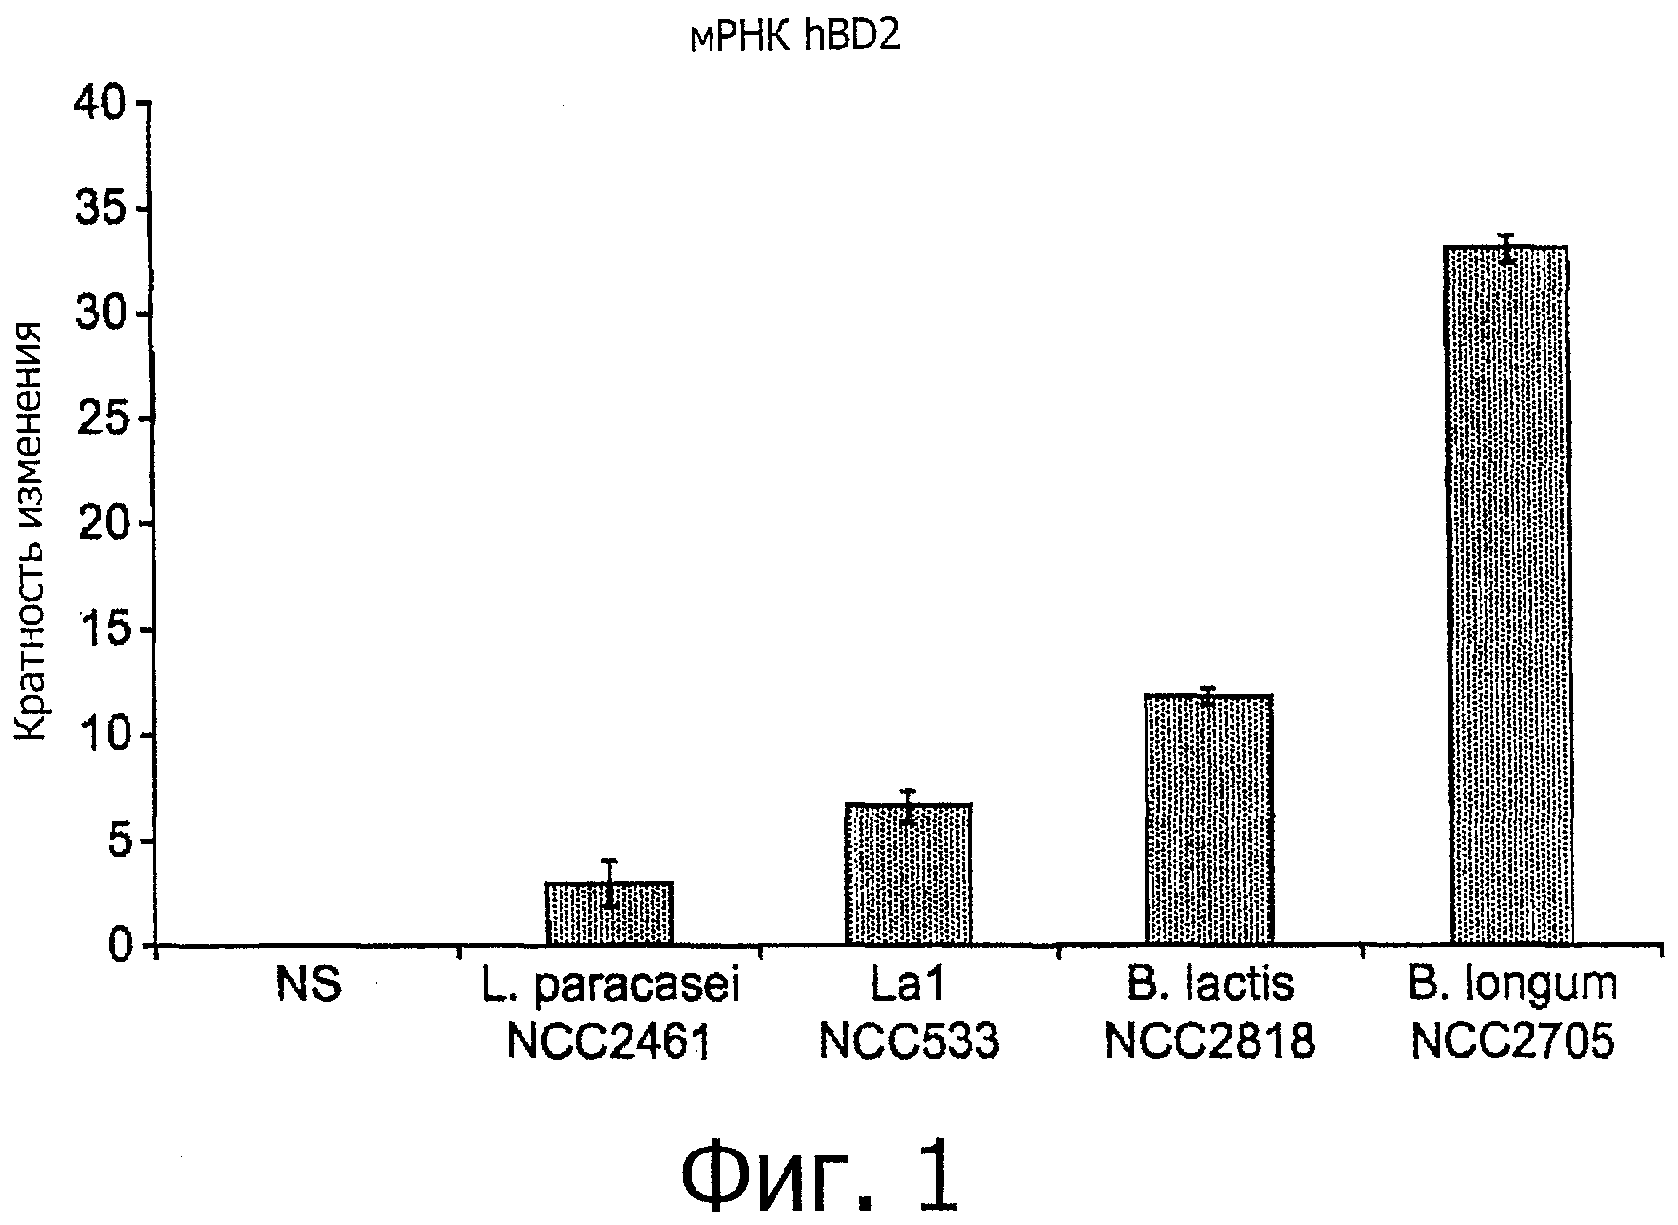 Bifidobacterium longum NCC 2705 (CNCM 1-2618) И ИММУННЫЕ РАССТРОЙСТВА